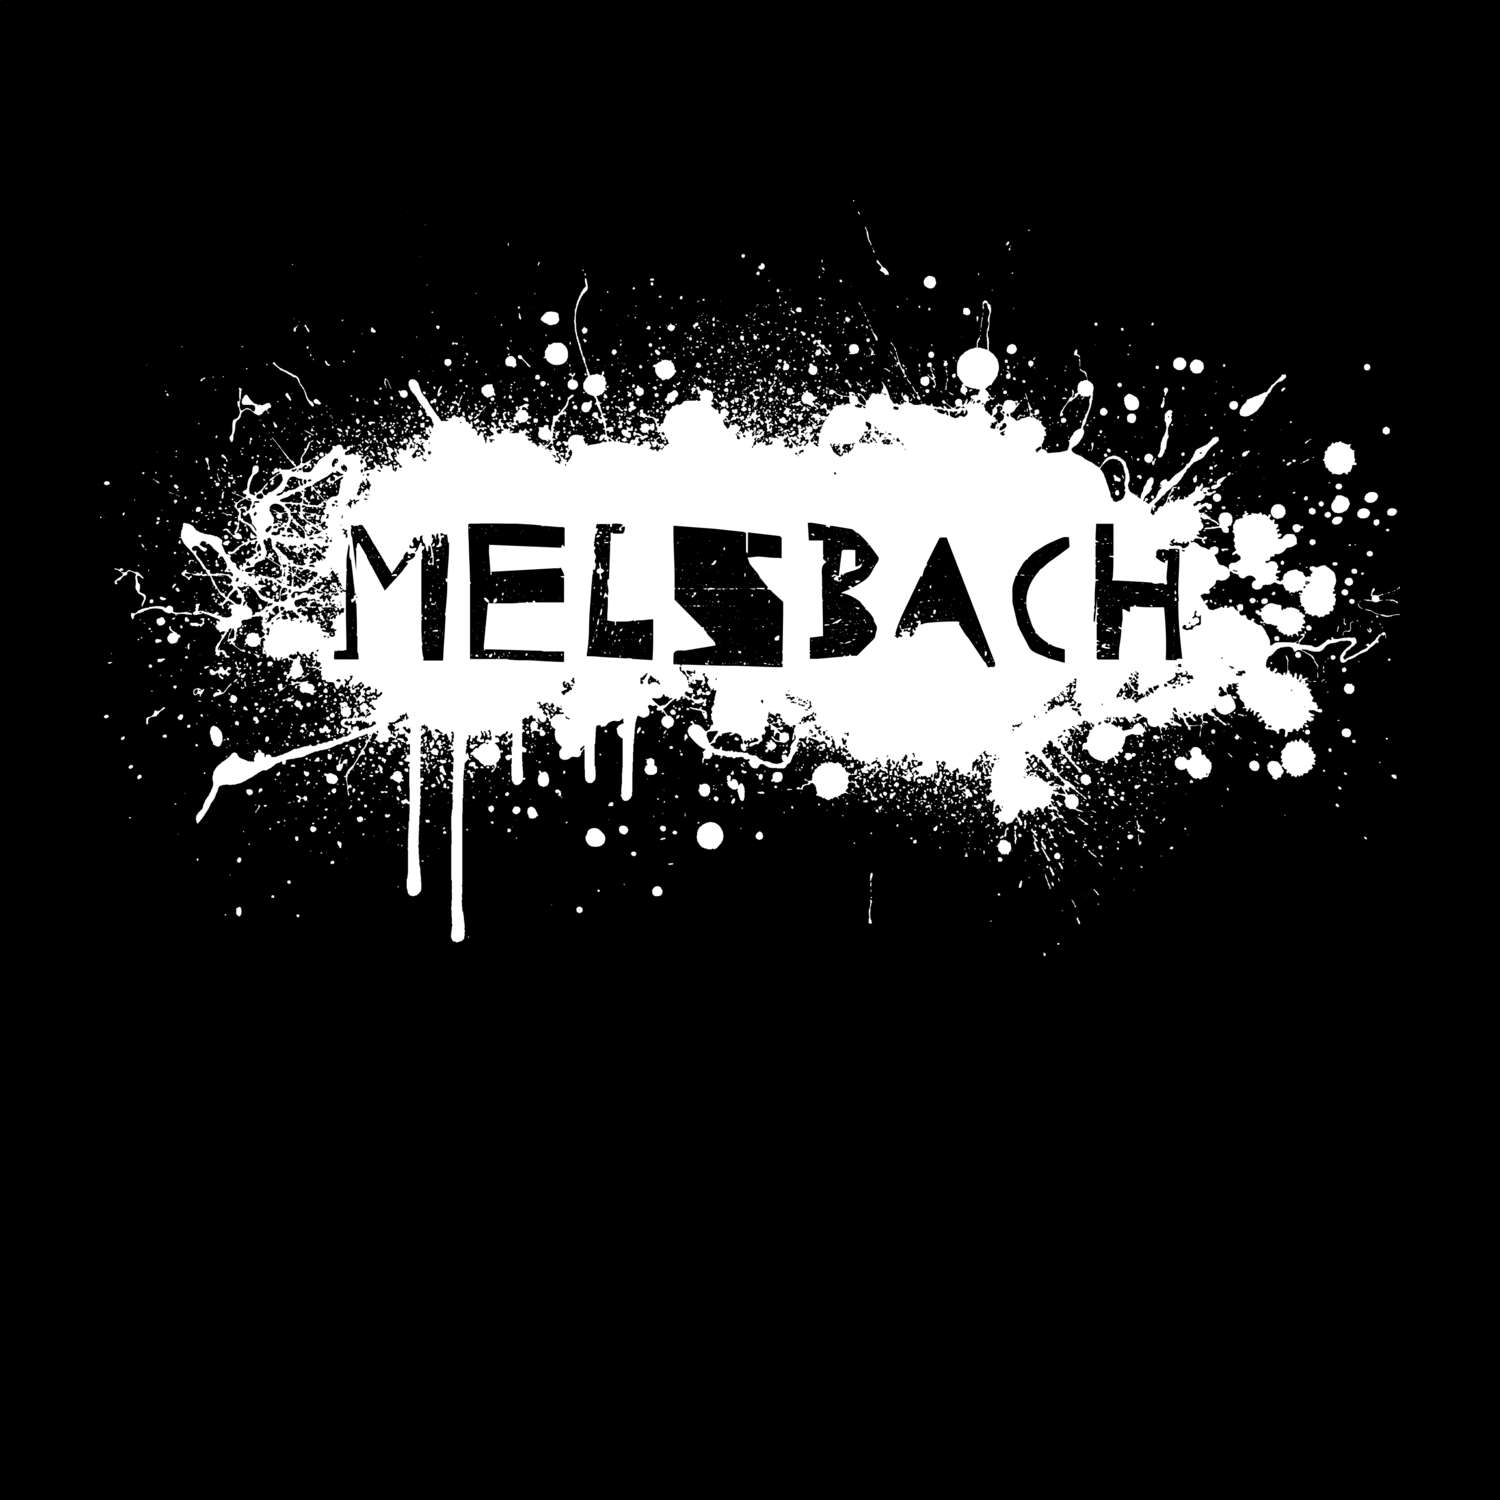 Melsbach T-Shirt »Paint Splash Punk«